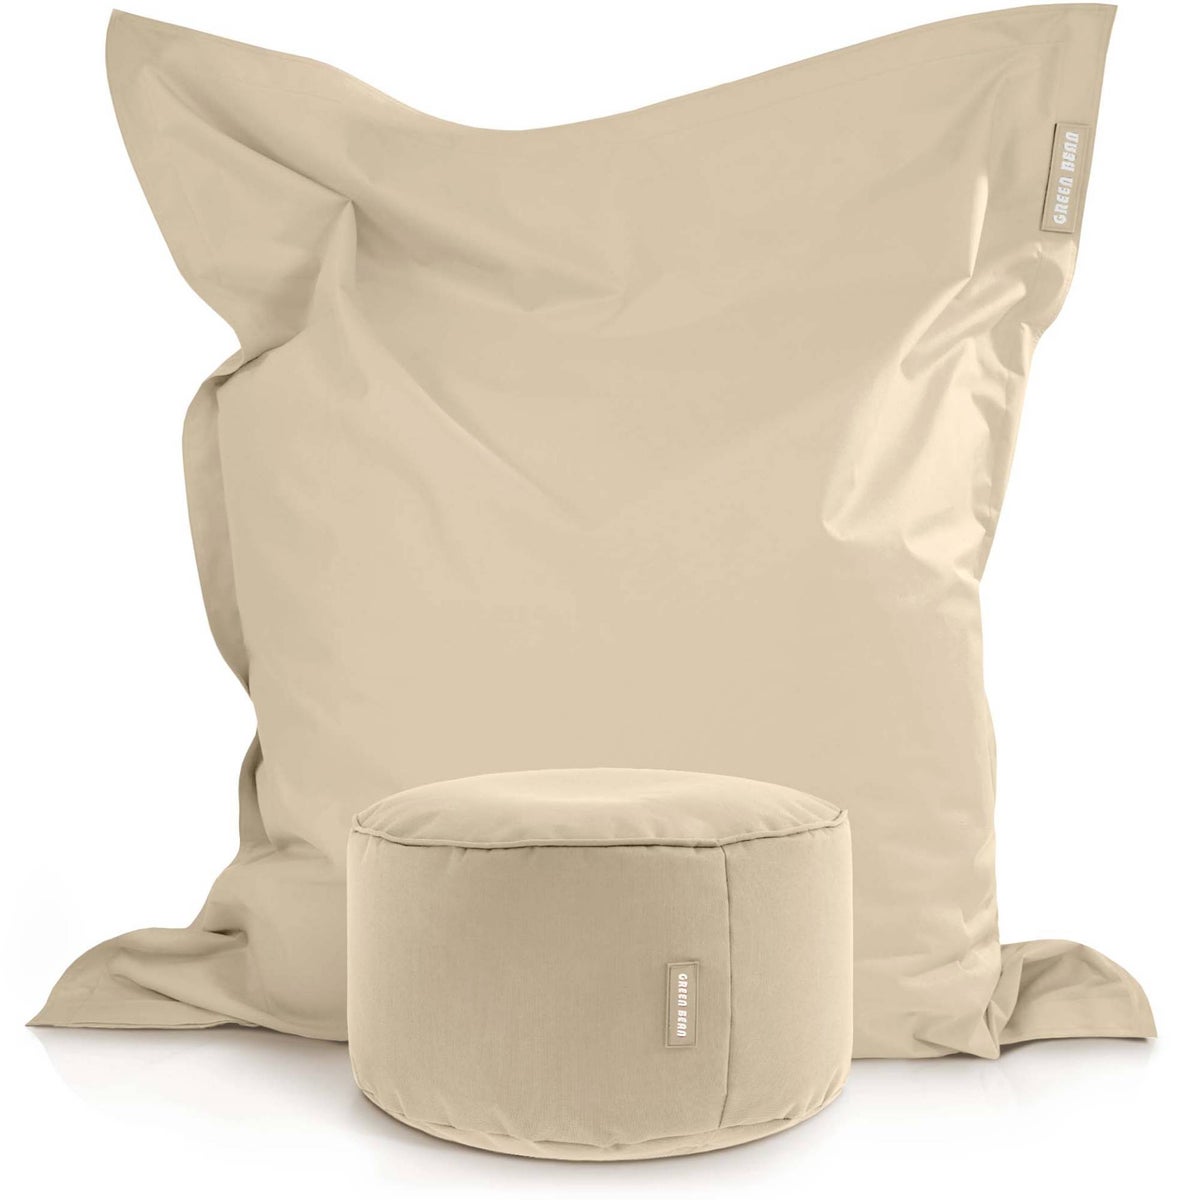 Green Bean© 2er Set XXL Sitzsack inkl. Pouf fertig befüllt mit EPS-Perlen - Riesensitzsack 140x180 Liege-Kissen Bean-Bag Chair Loung Bodenkissen